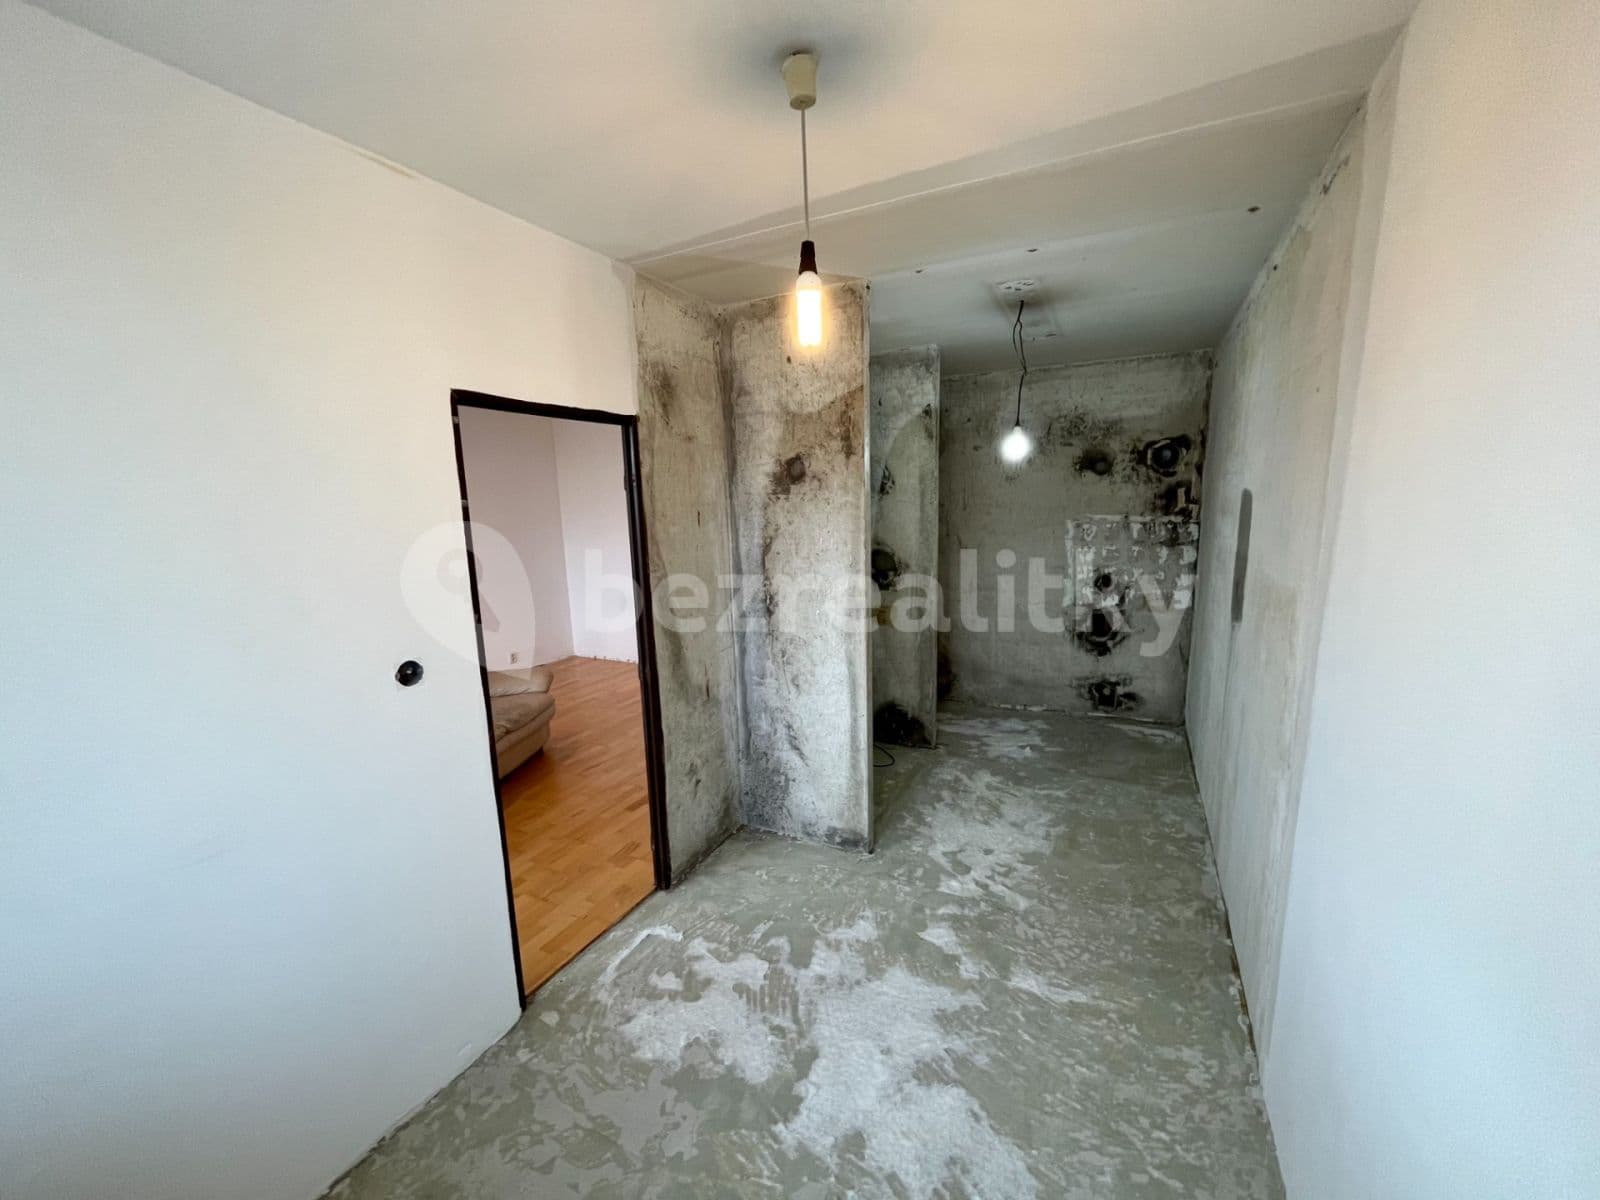 3 bedroom flat to rent, 84 m², Augustinova, Prague, Prague